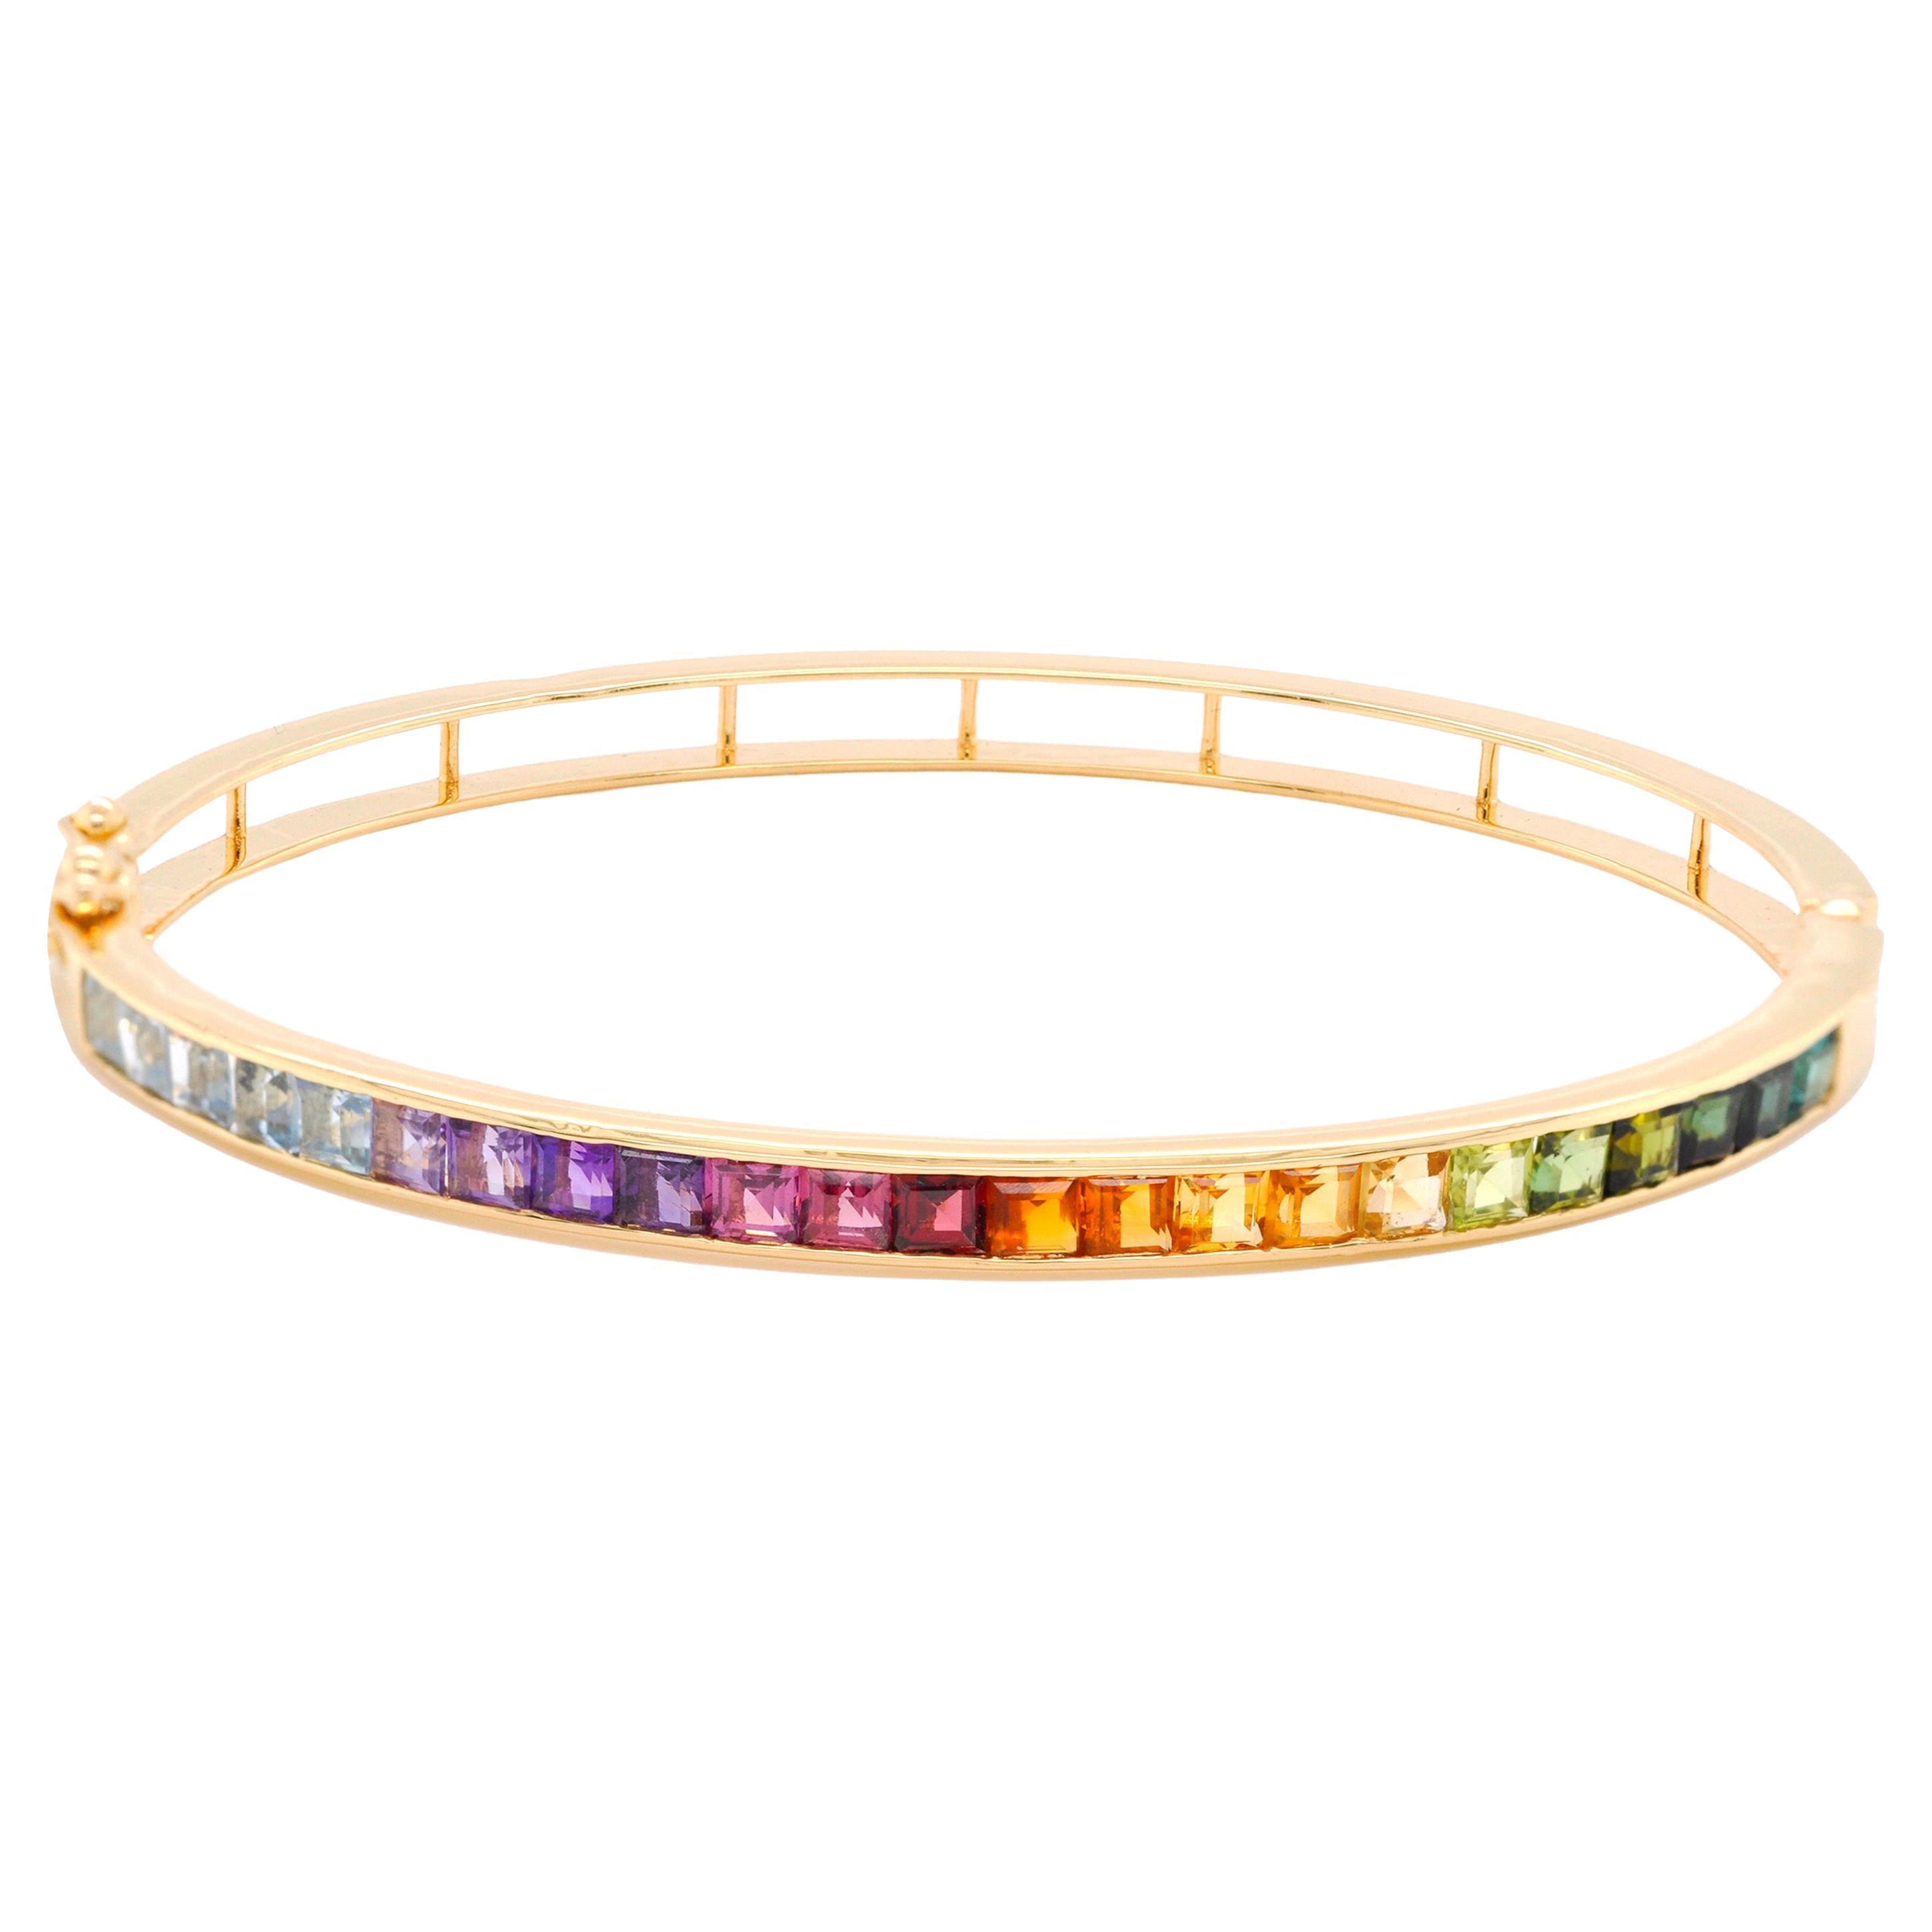 Bracelet carré en or jaune 18 carats serti de pierres précieuses multicolores arc-en-ciel de 3 mm